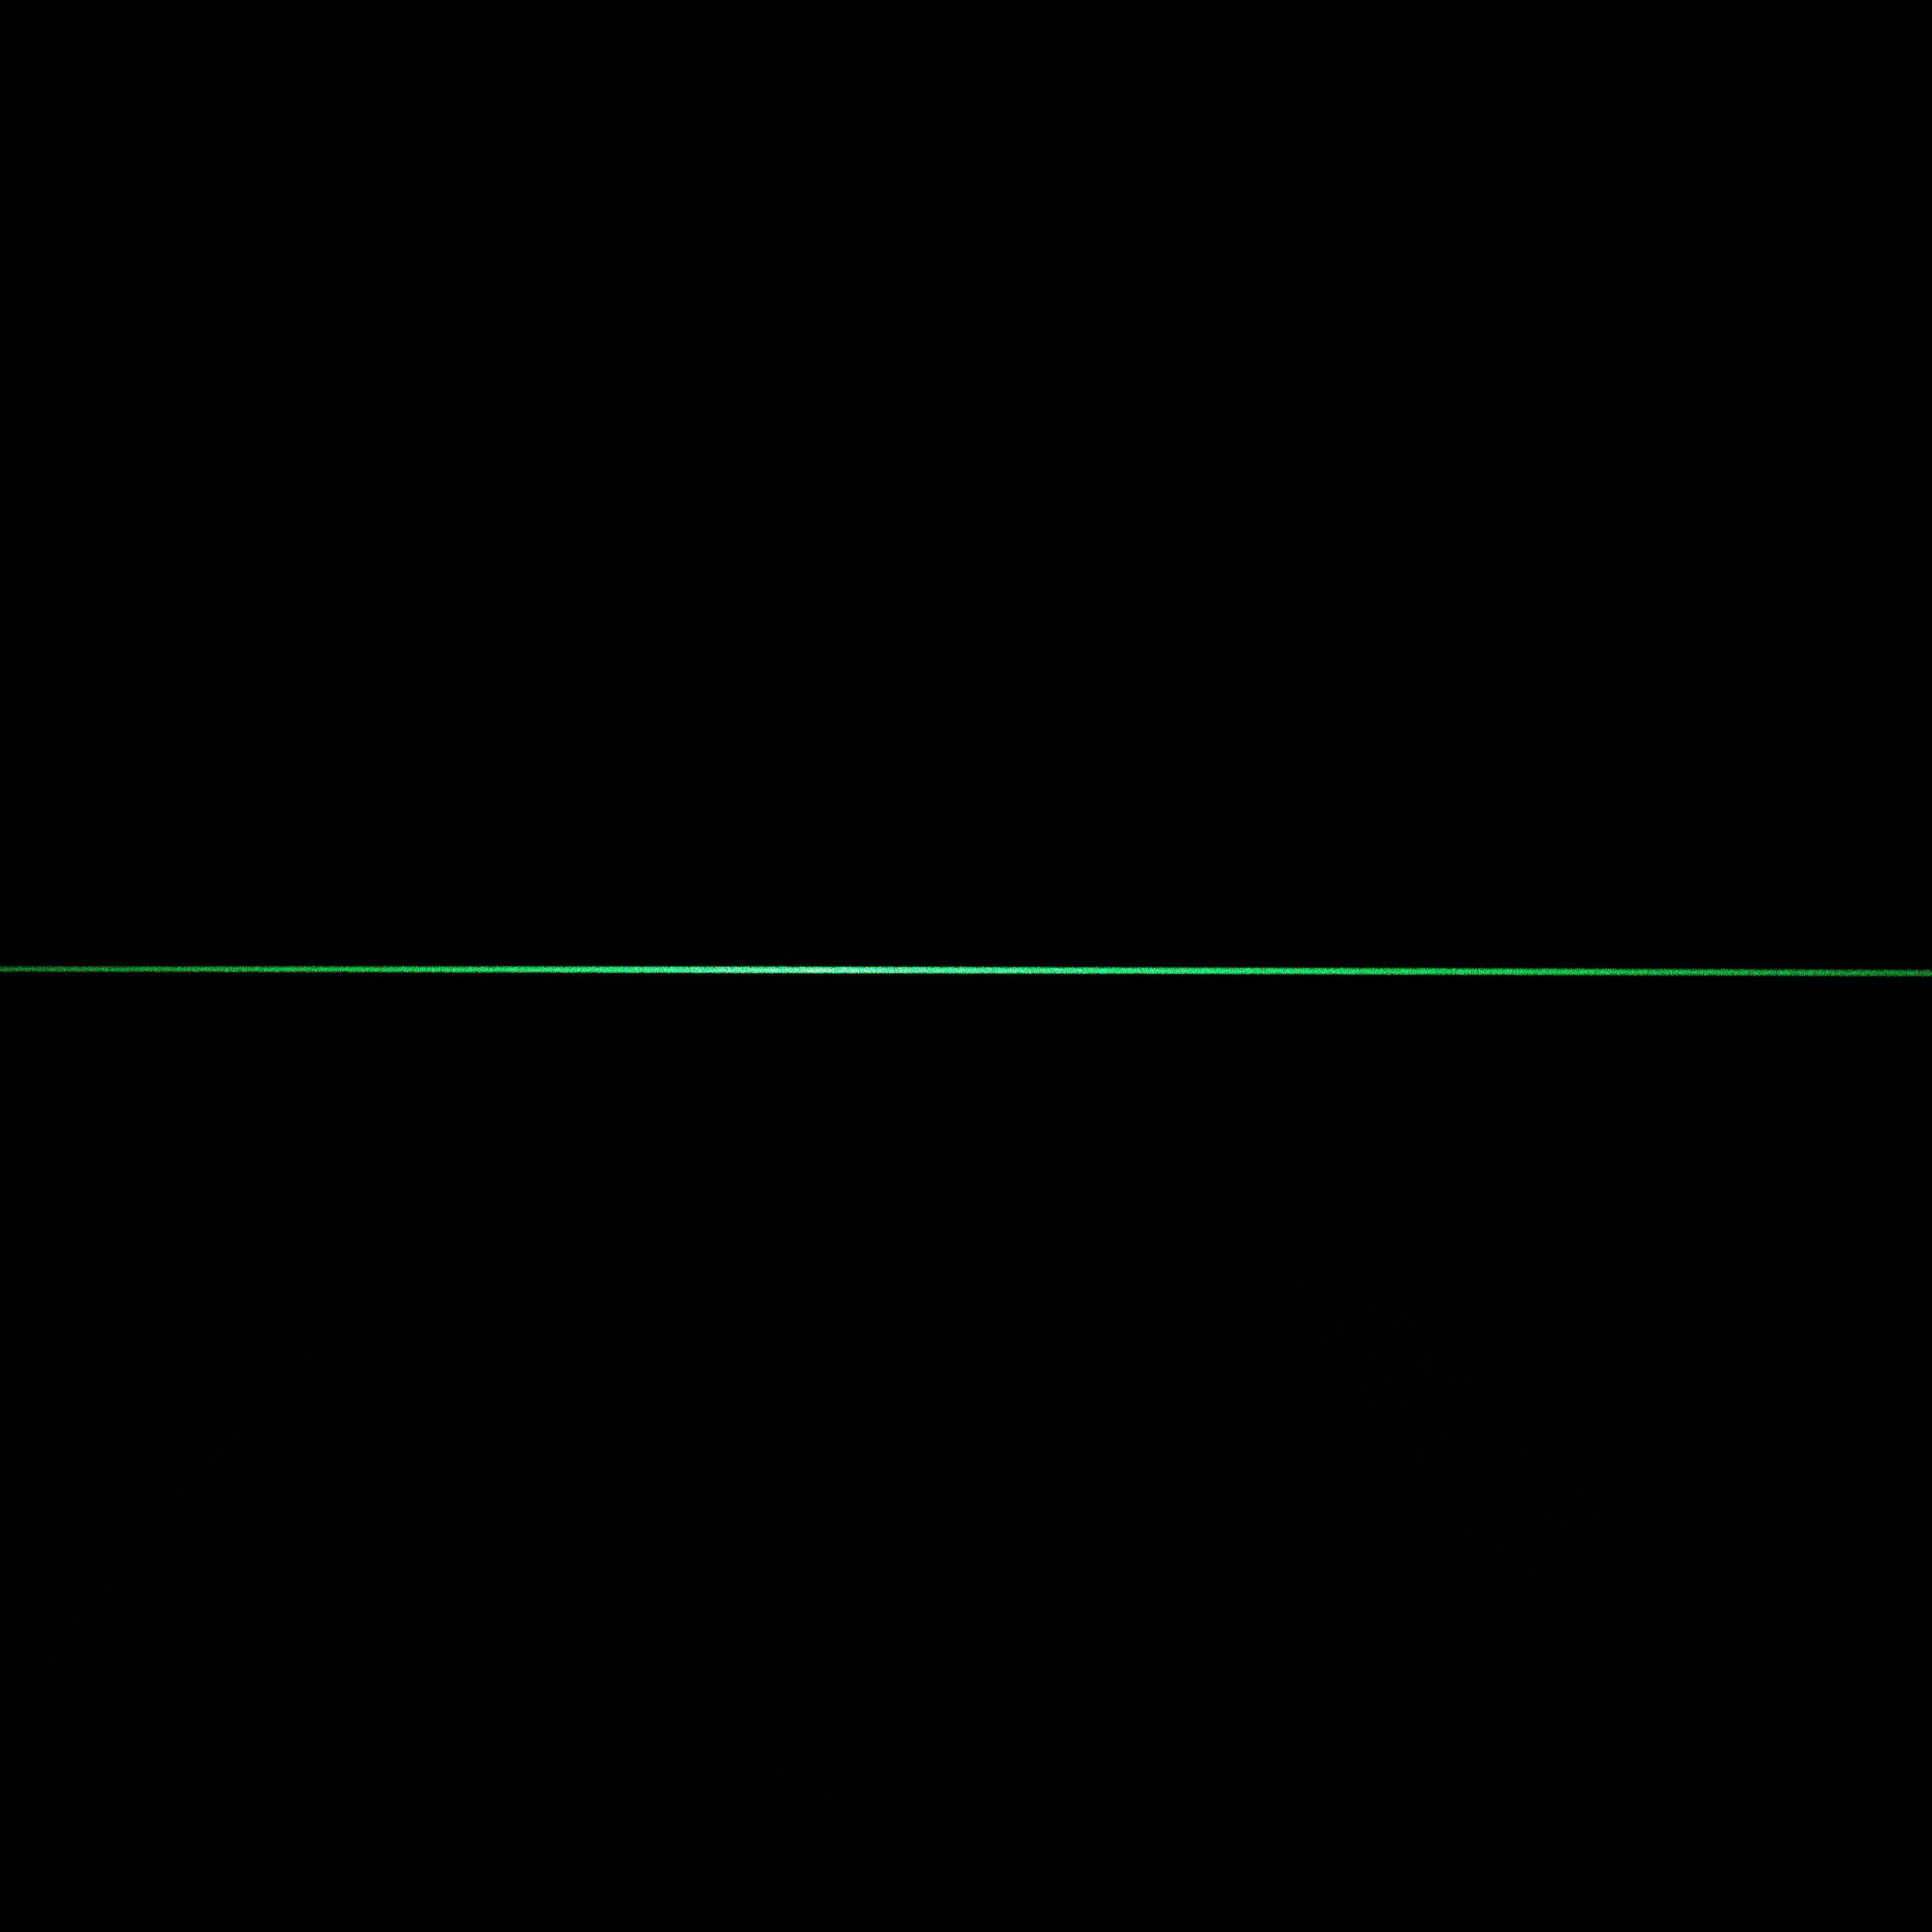 Picotronic Linienlaser grün, 520nm, 90°, 24V DC, Ø20x135 mm, Fokus einstellbar, Laserklasse 2M